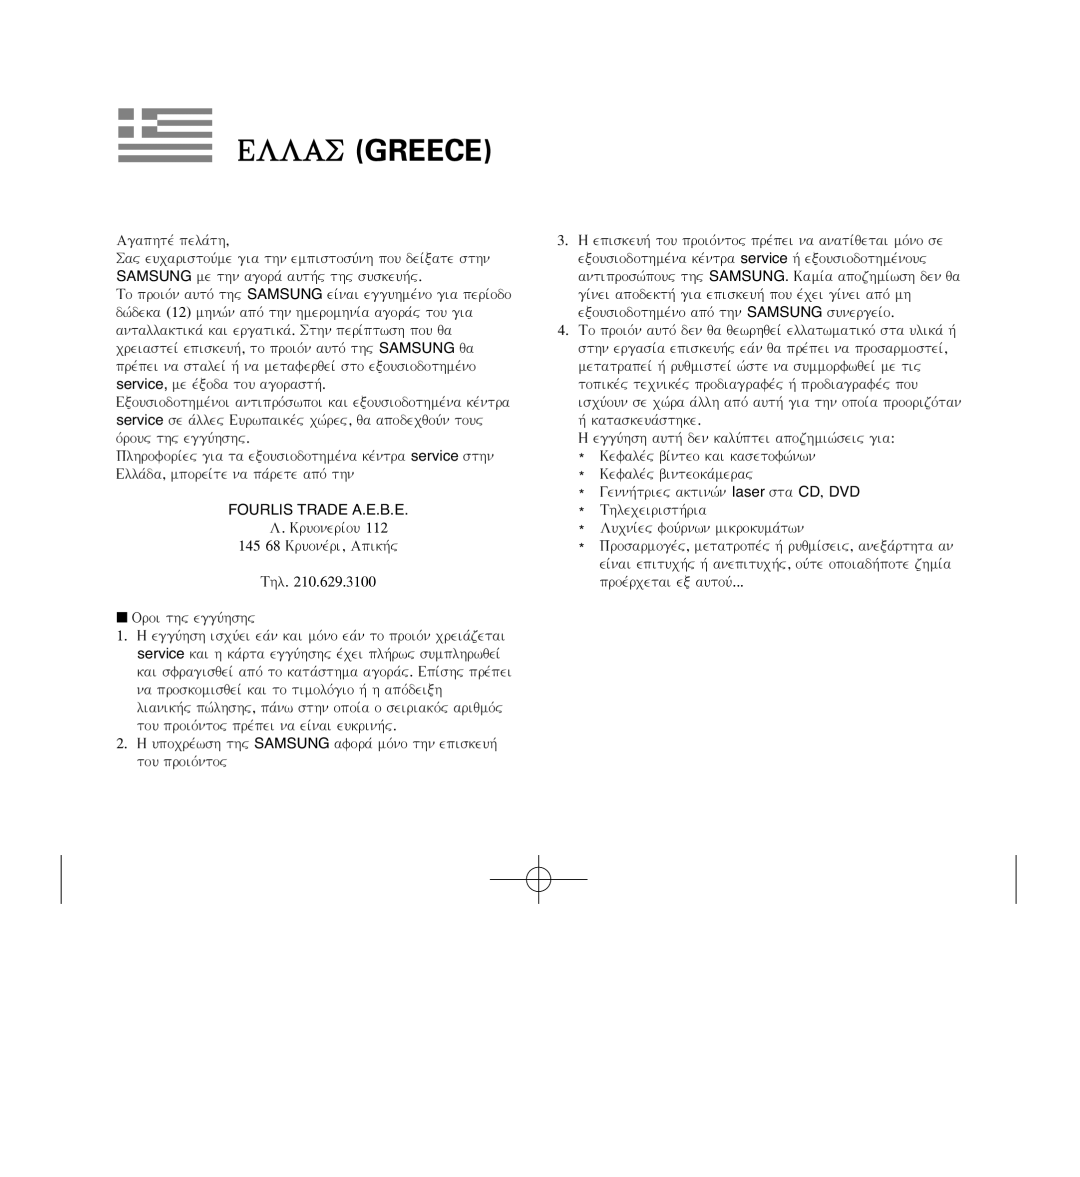 Samsung D371W(i), VP-D371(i), D975W(i), D372WH(i) manual Ellas Greece, Fourlis Trade A.E.B.E 